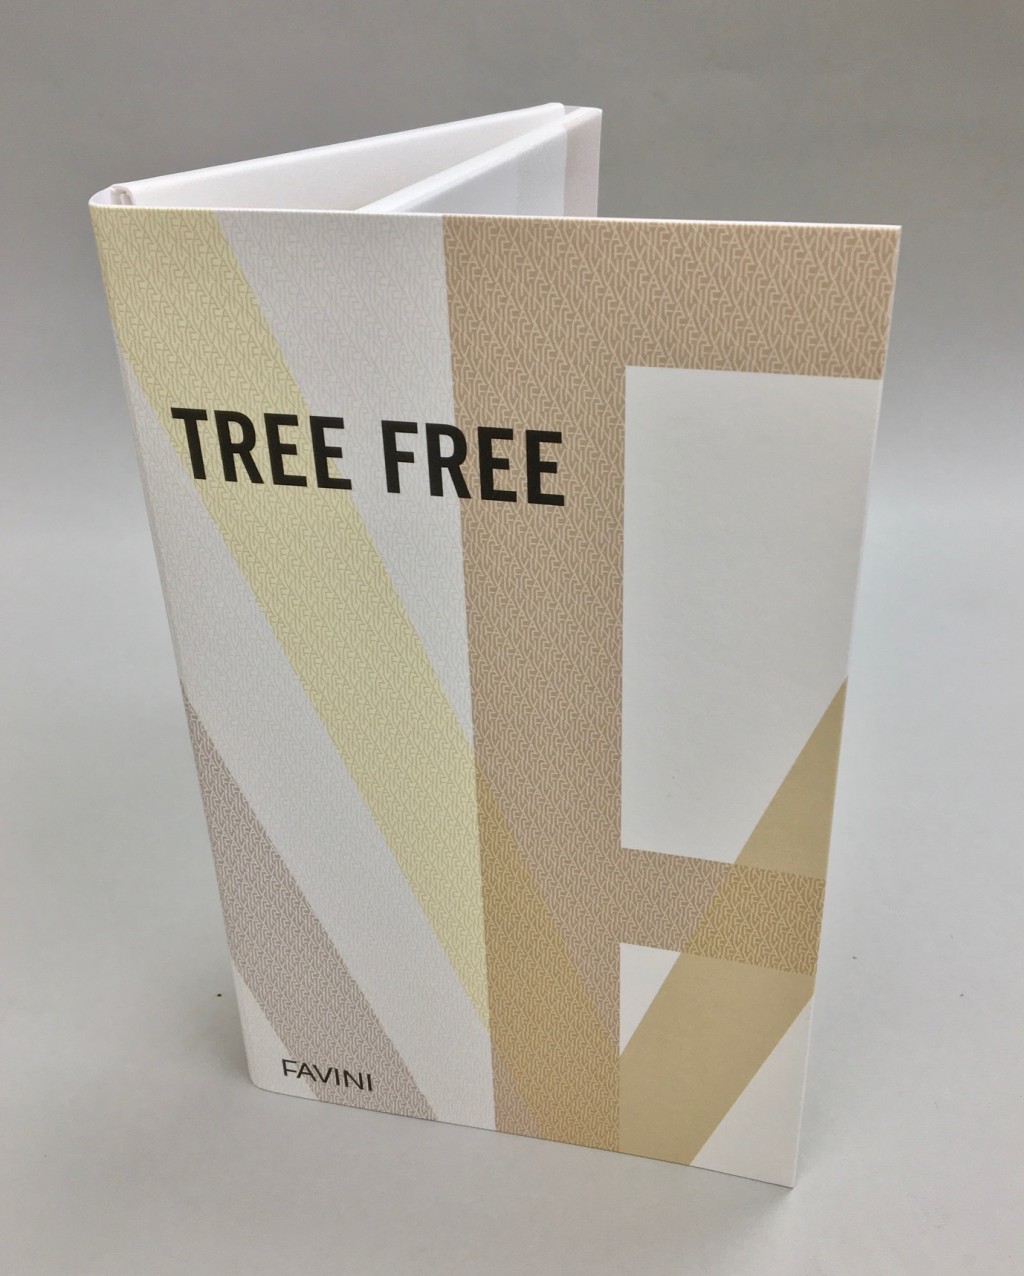 Bambú Tree Free, nuevo producto sostenible, en Unión Papelera